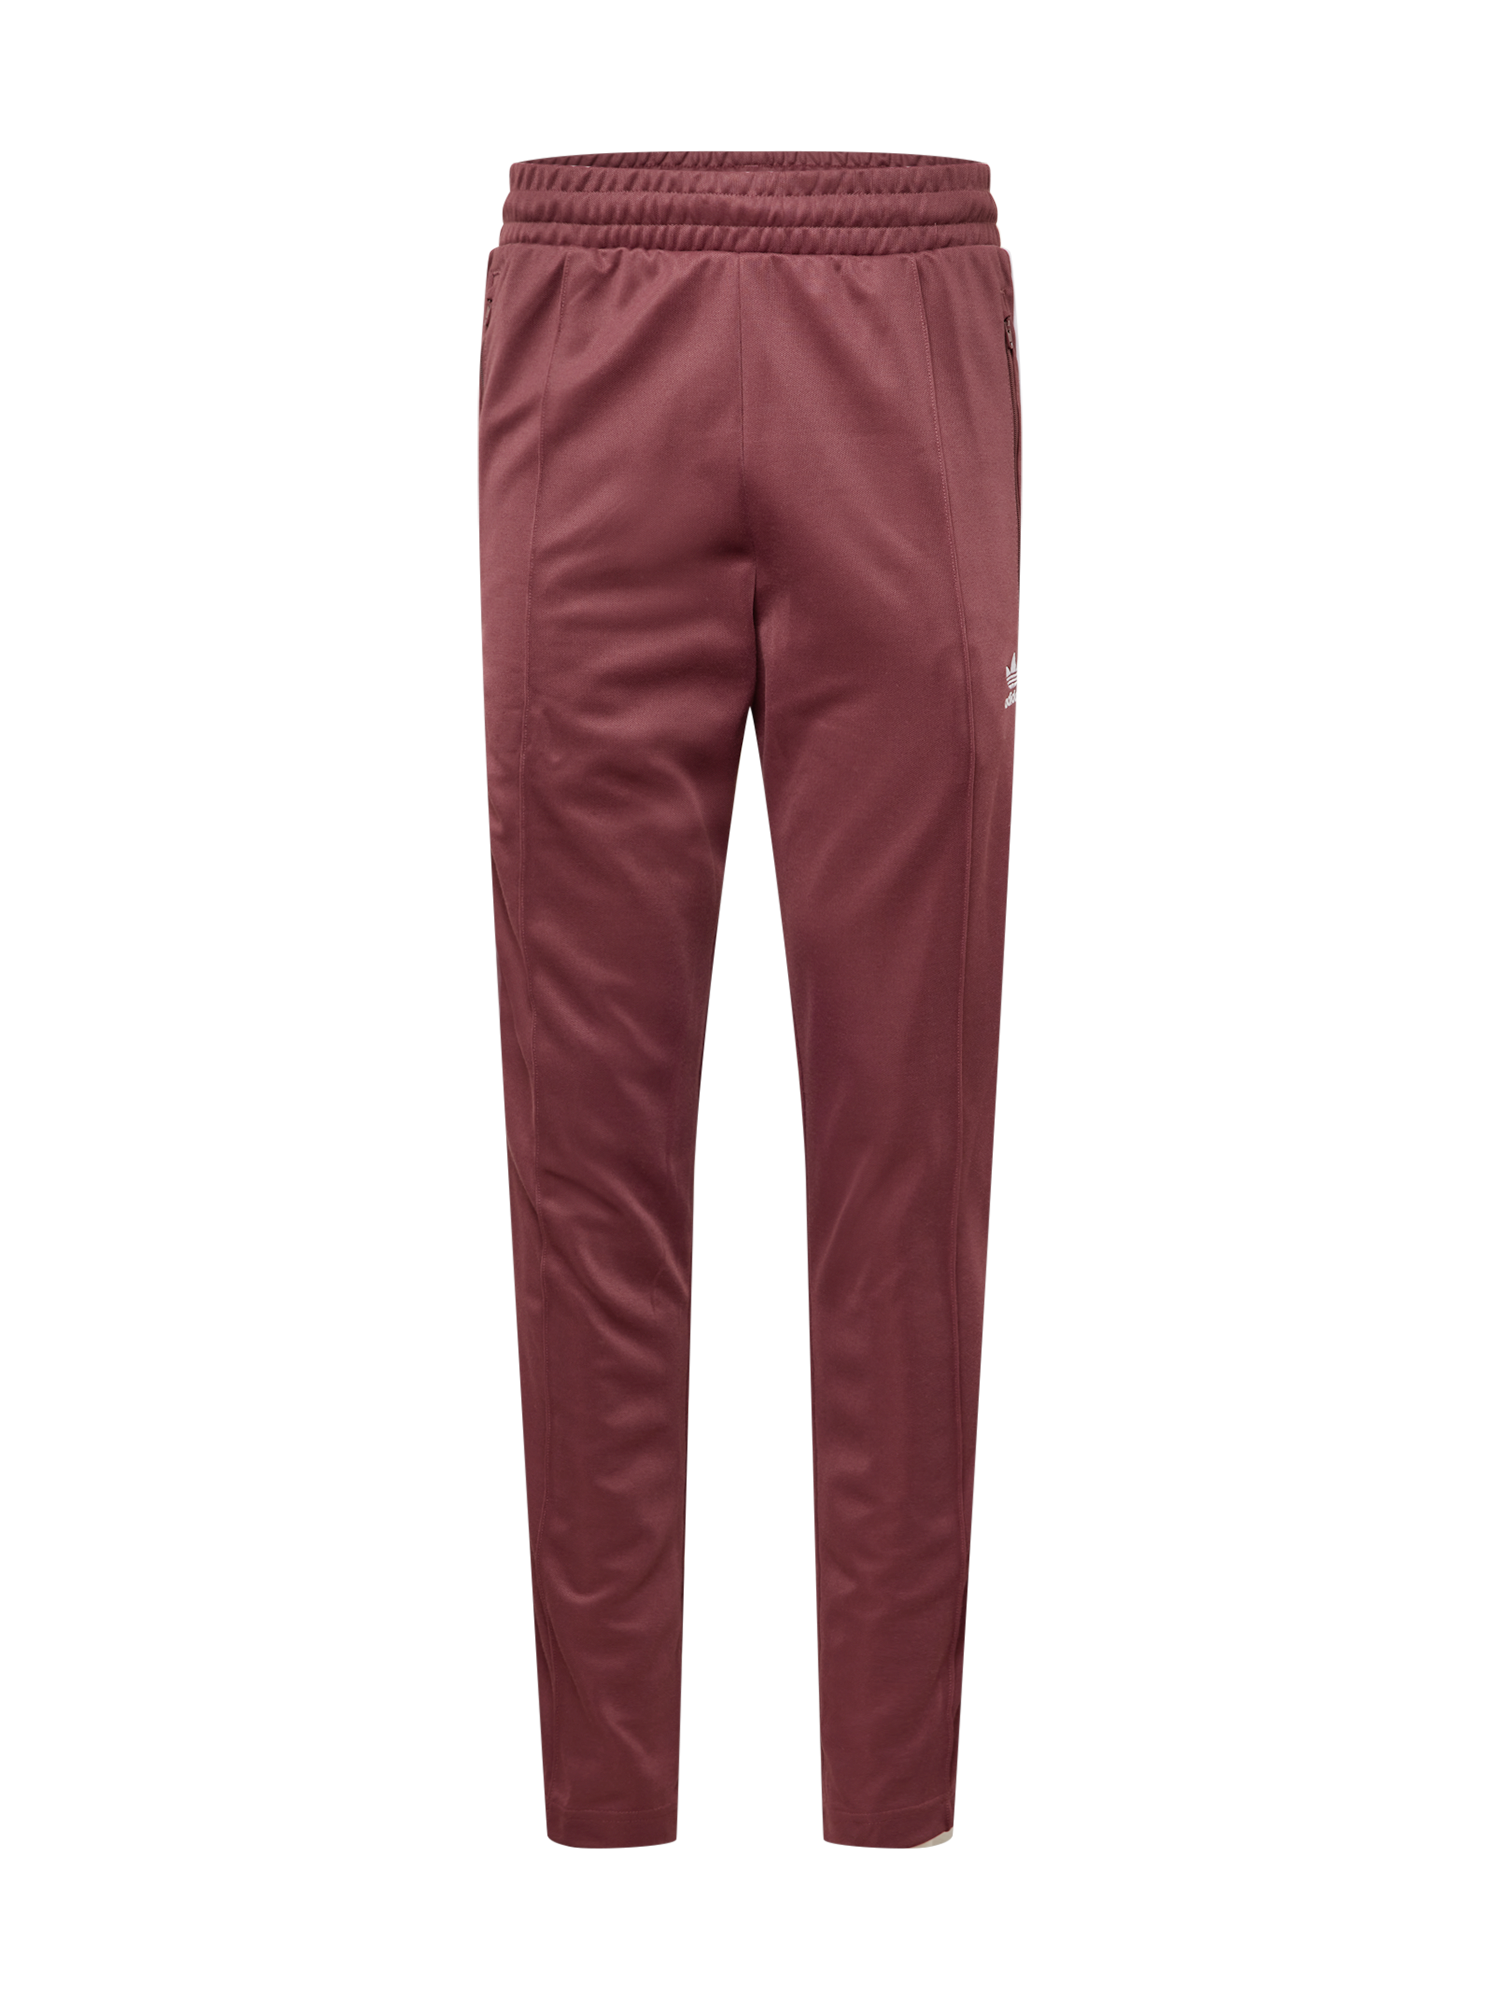 Bluzy Mężczyźni ADIDAS ORIGINALS Spodnie Beckenbauer w kolorze Bordowym 